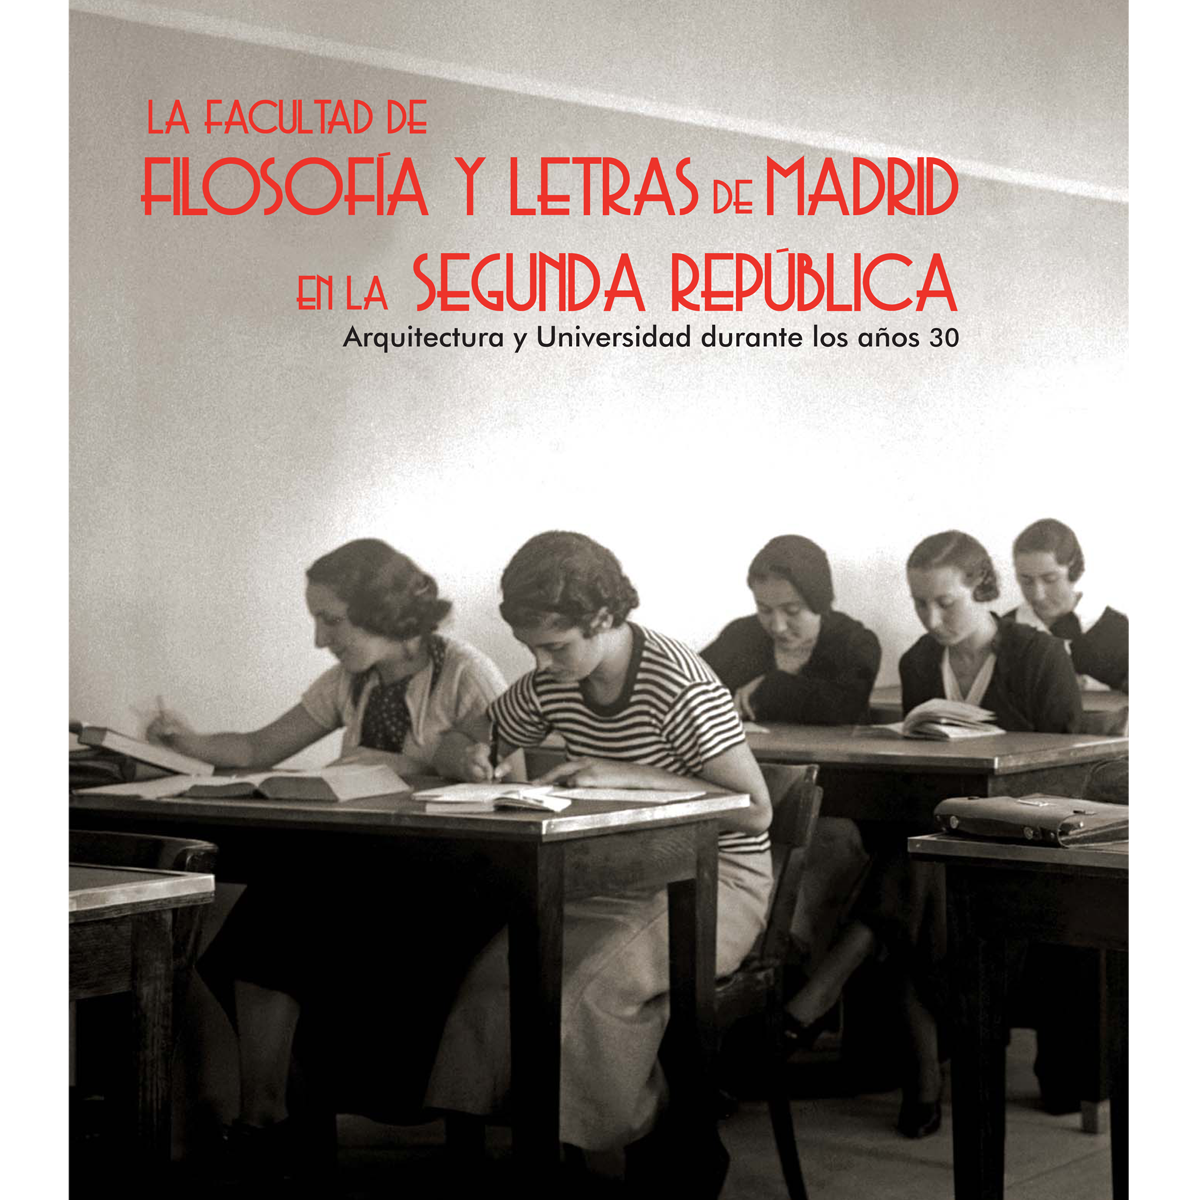 La facultad de Filosofía y Letras de Madrid en la Segunda República